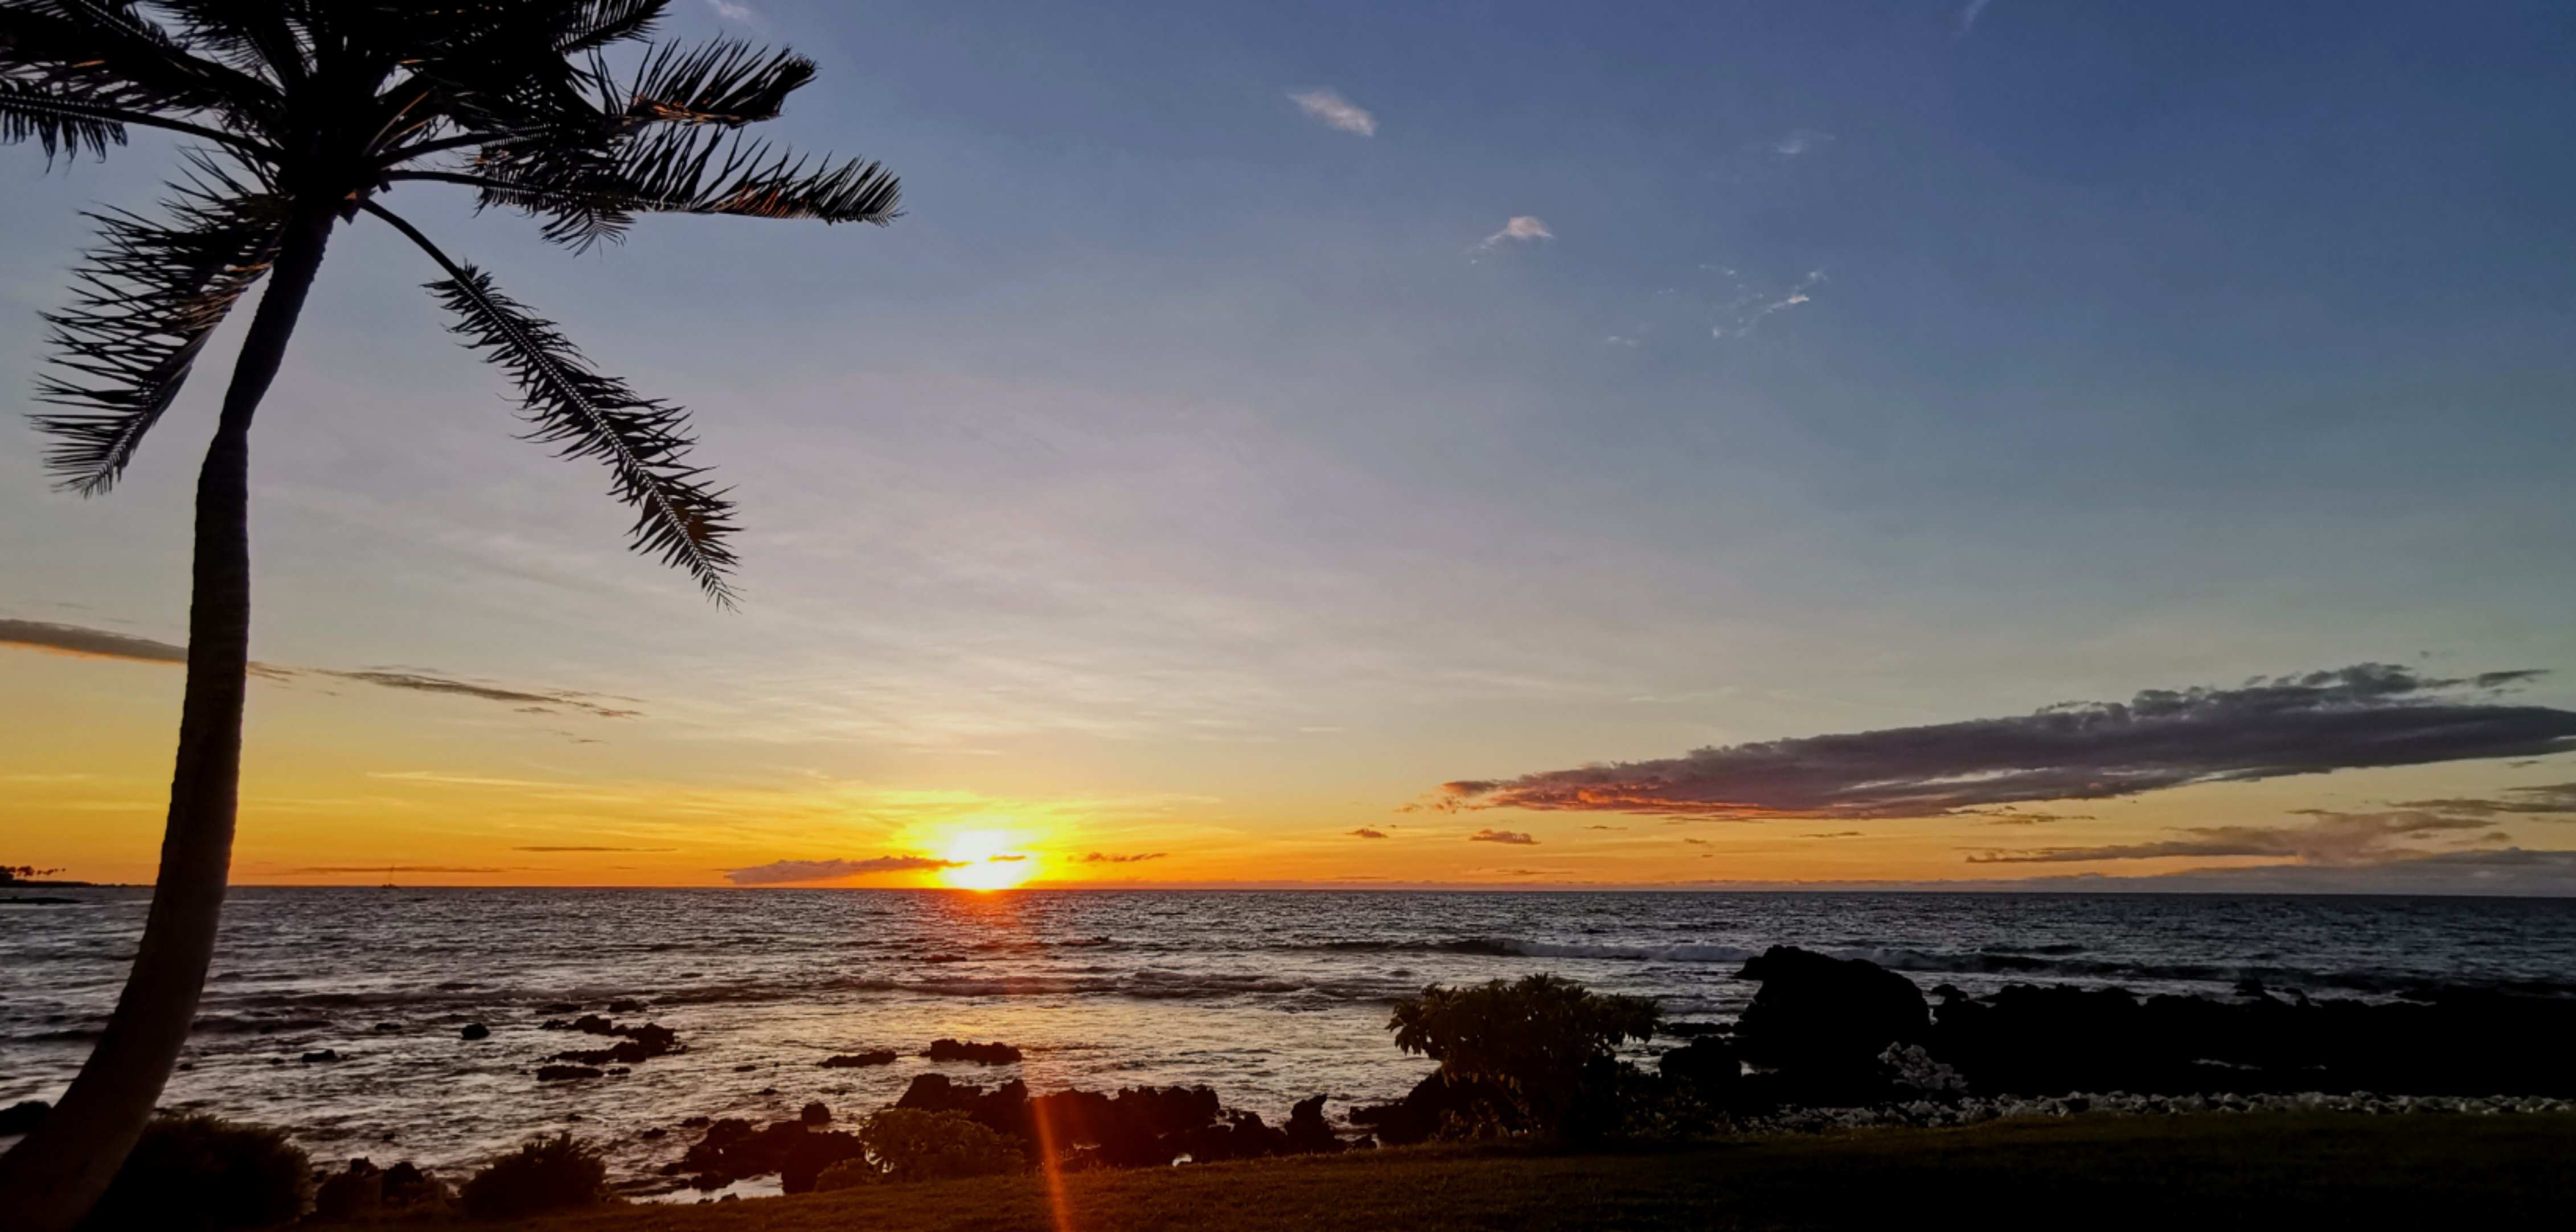 夏威夷的夕阳.jpg